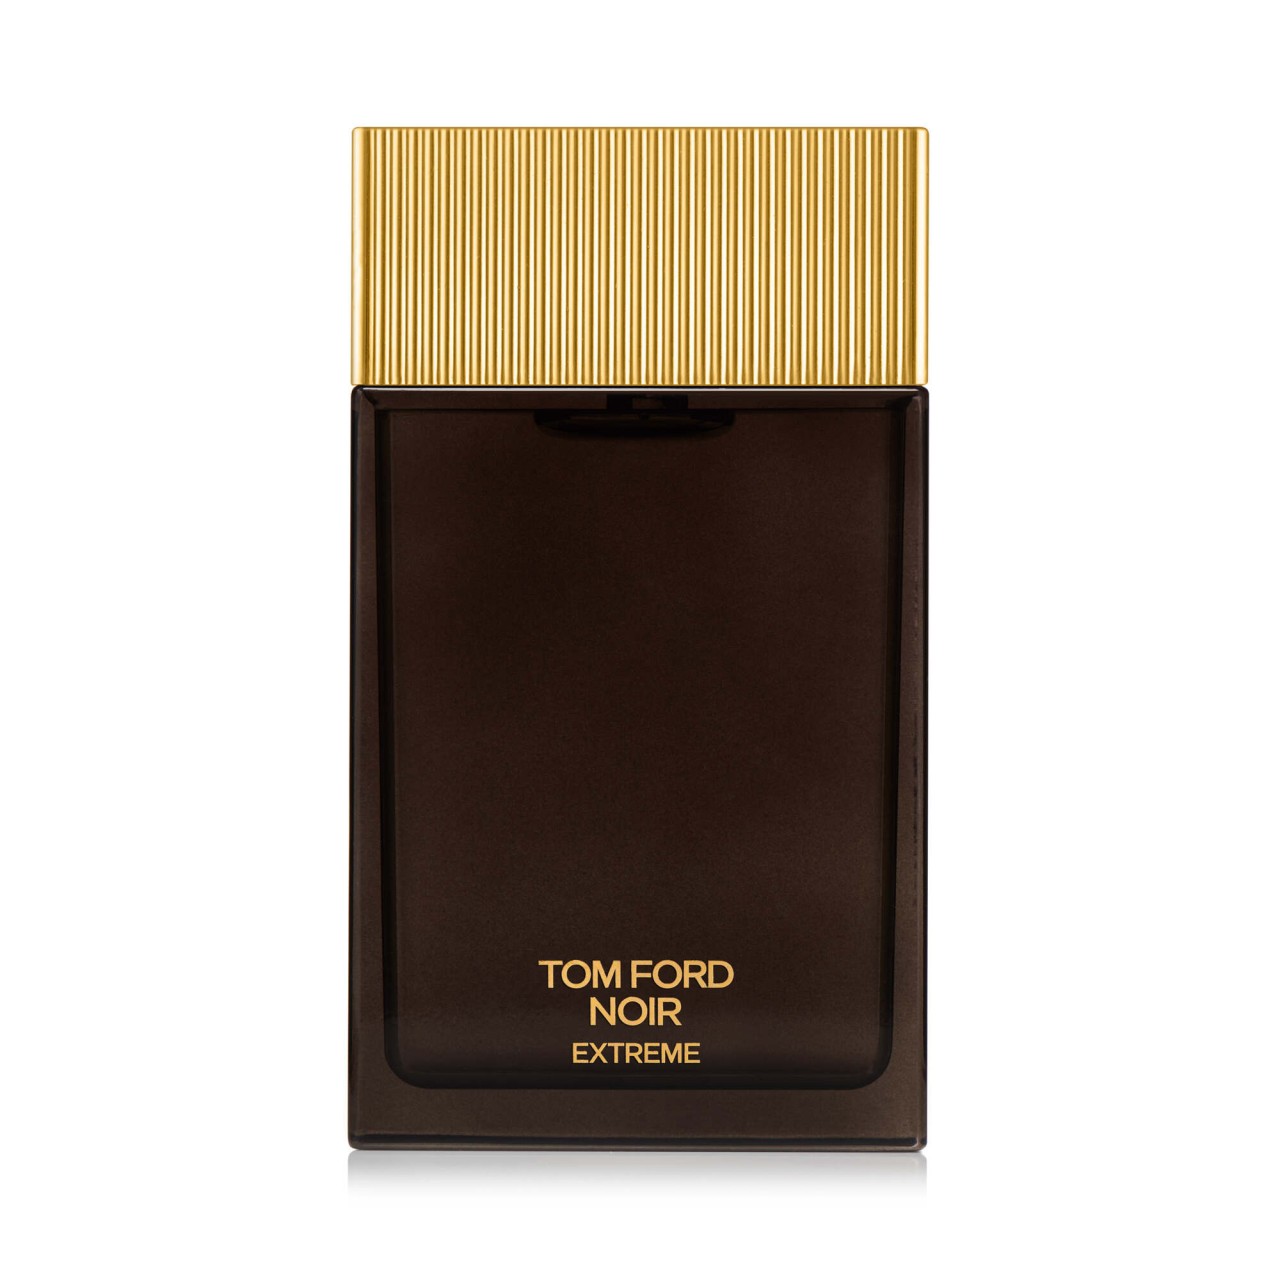 Tom Ford - Noir Extreme Eau de Parfum -  150 ml